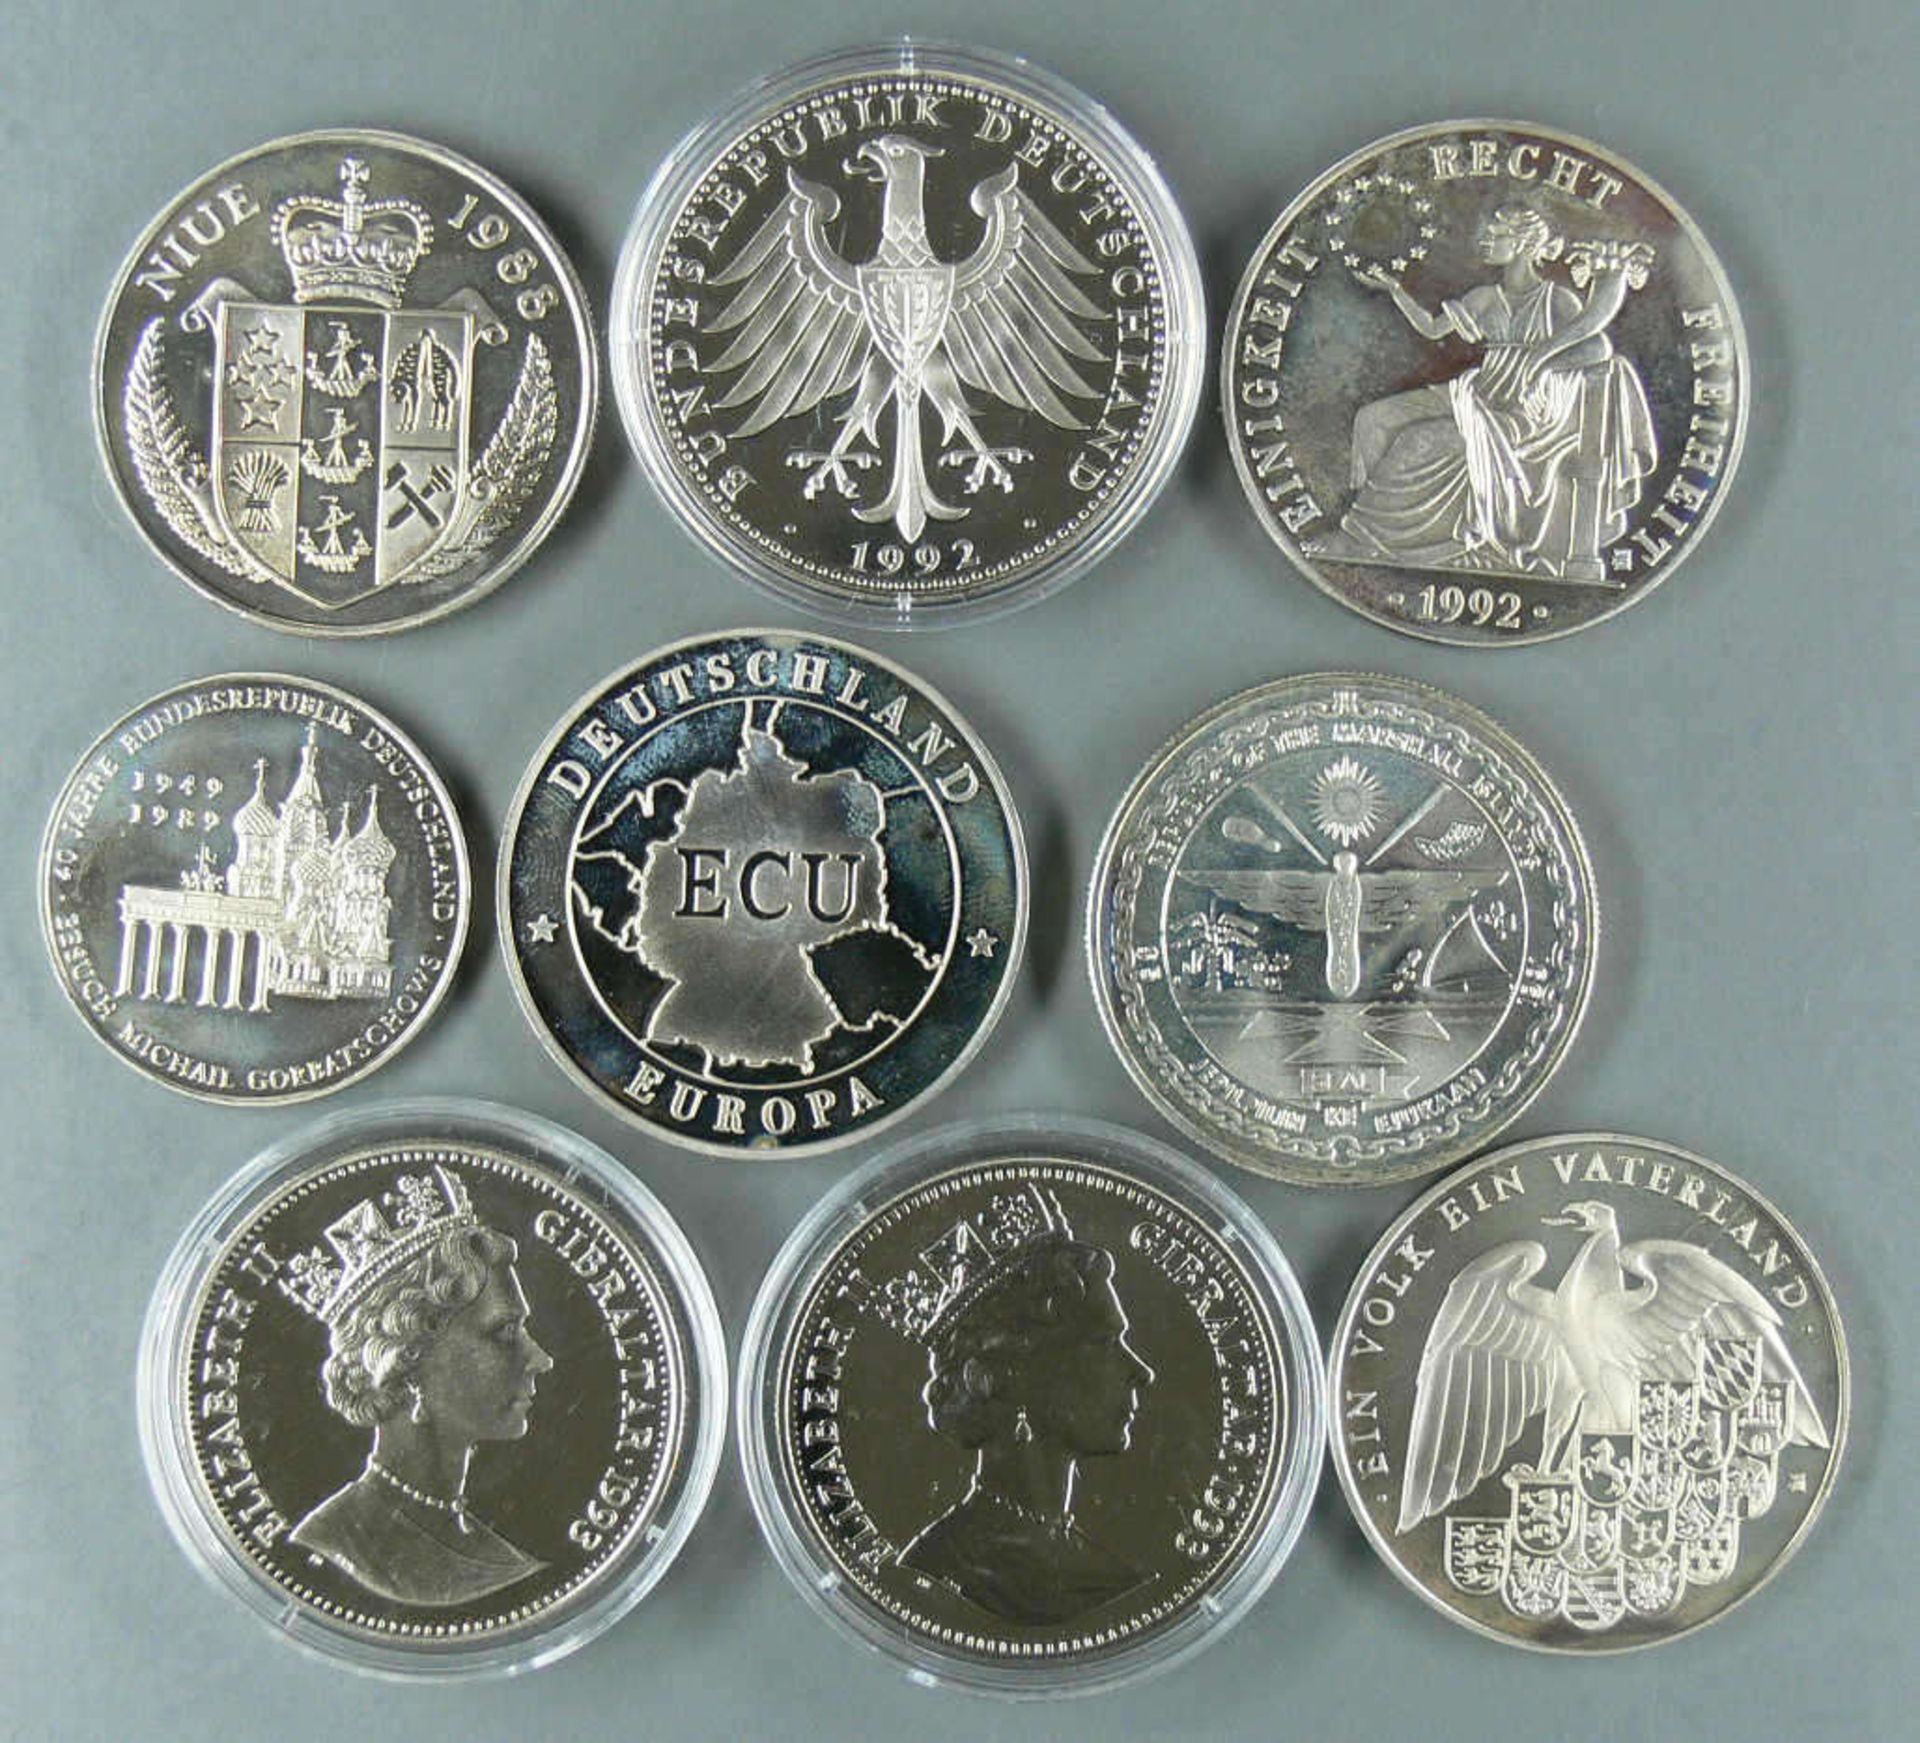 Lot Münzen /Medaillen, bestehend aus: 2 x Gibraltar 1993, 2,8 Ecu "Eurotunnel", Durchmesser 38,6 mm. - Image 2 of 2